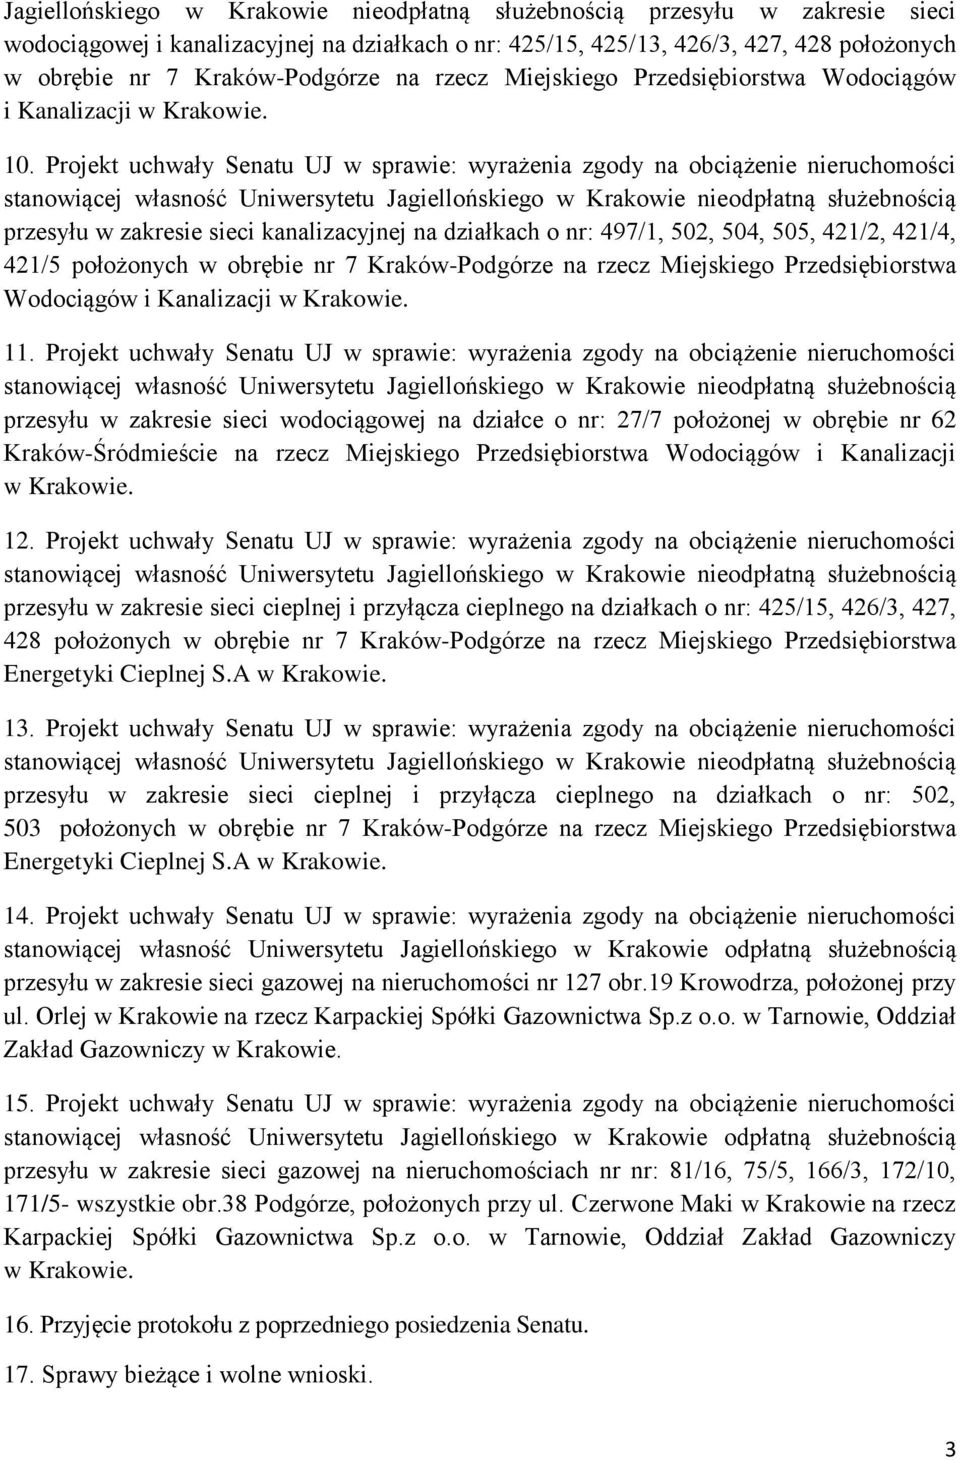 Projekt uchwały Senatu UJ w sprawie: wyrażenia zgody na obciążenie nieruchomości stanowiącej własność Uniwersytetu Jagiellońskiego w Krakowie nieodpłatną służebnością przesyłu w zakresie sieci